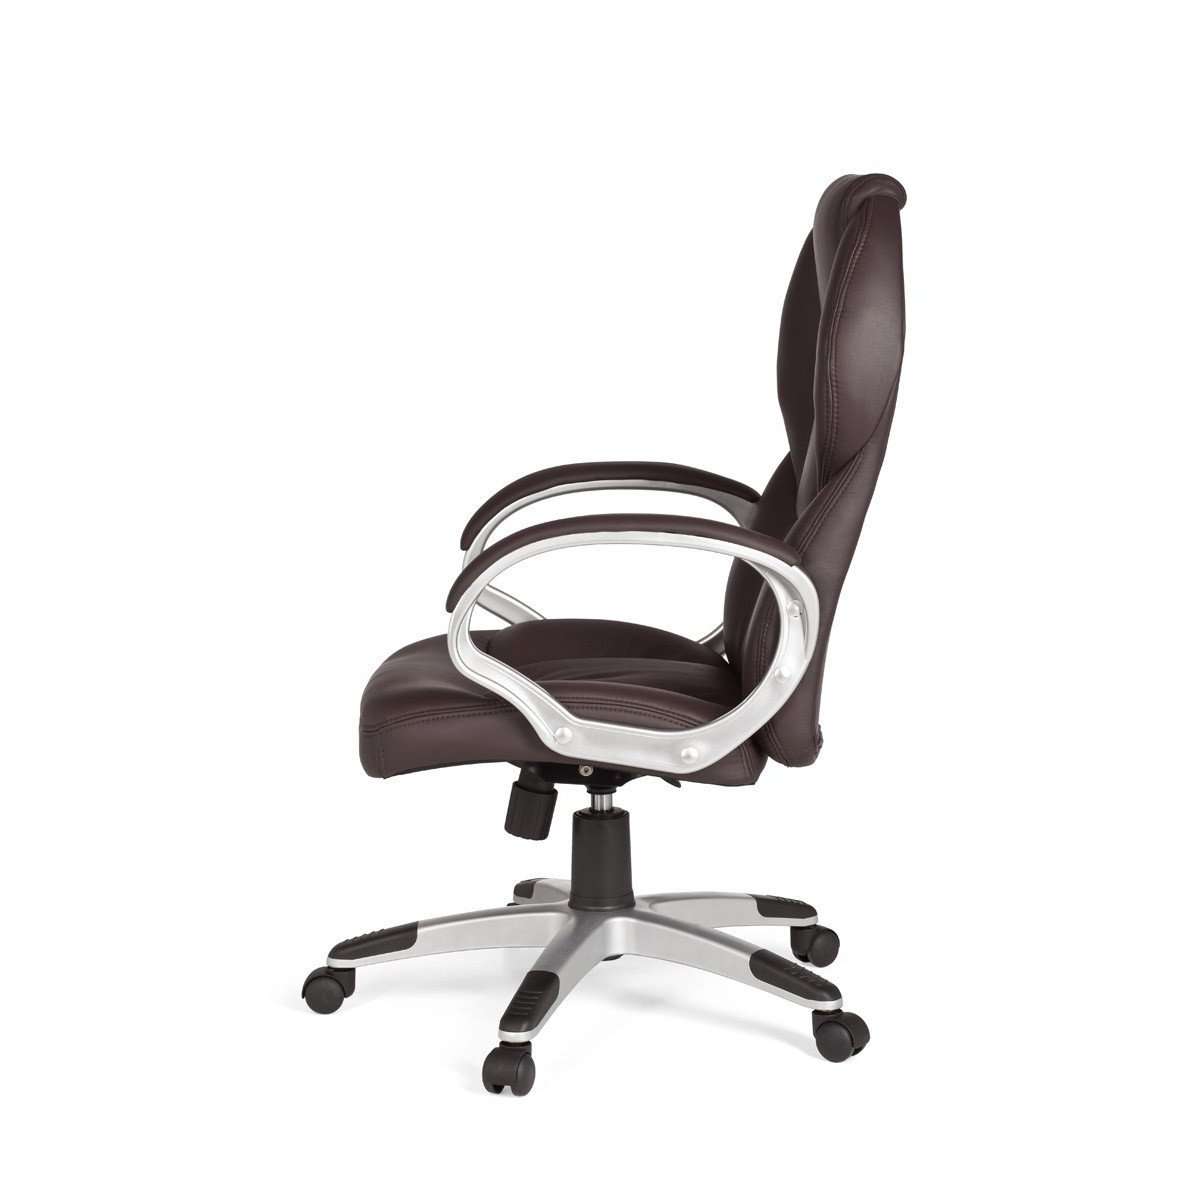 Chaise de bureau de luxe Nancy's Harding Park - Chaise de bureau ergonomique - Chaises de bureau pour adultes